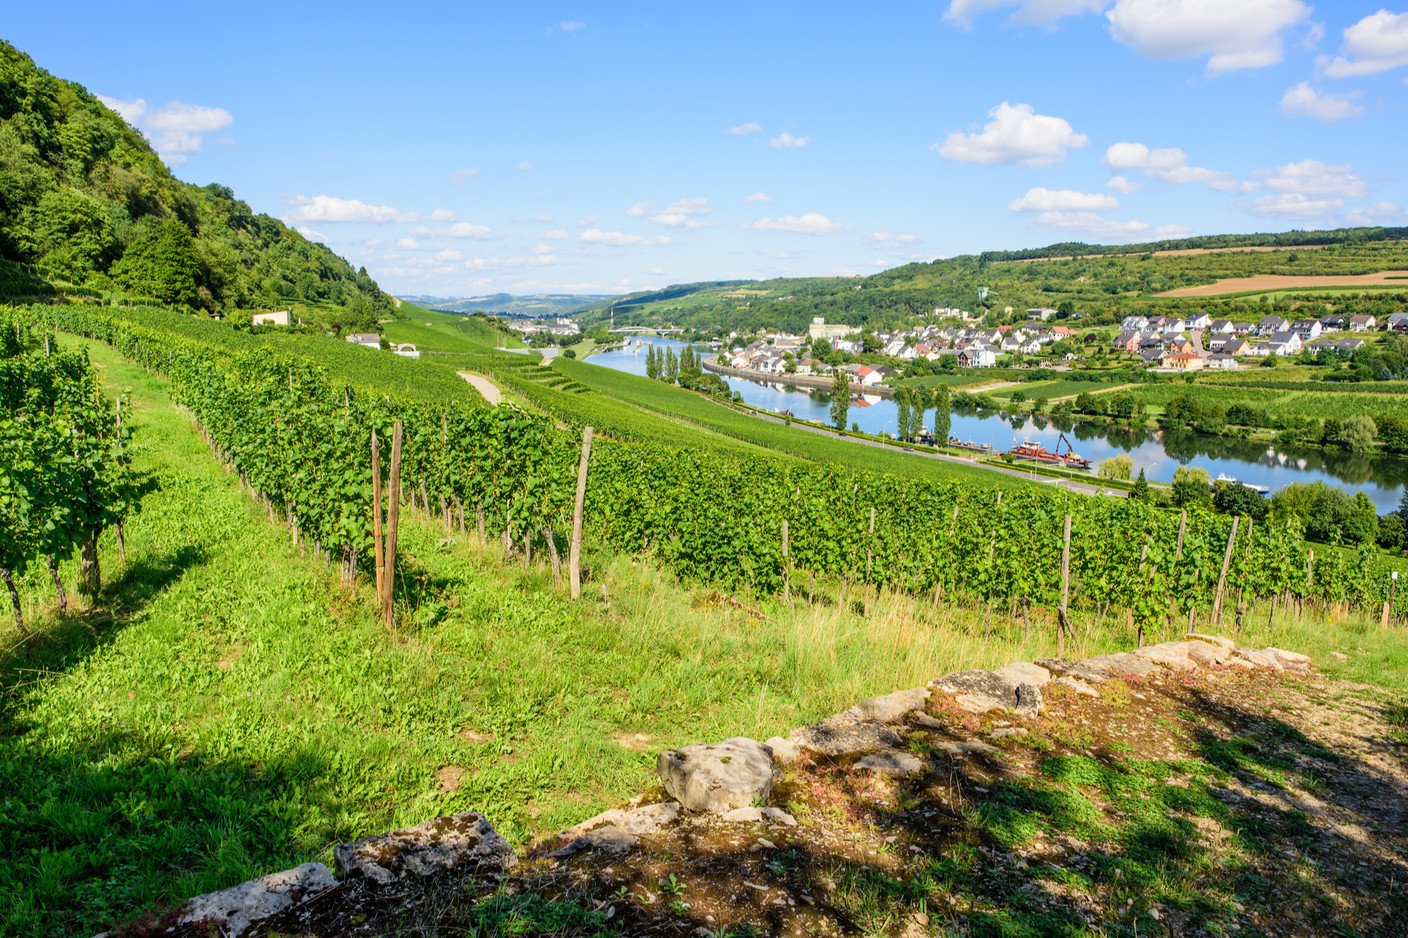 La tour se situe aussi sur la route du vin, au bord de la Moselle. (Photo: Paperjam.lu)